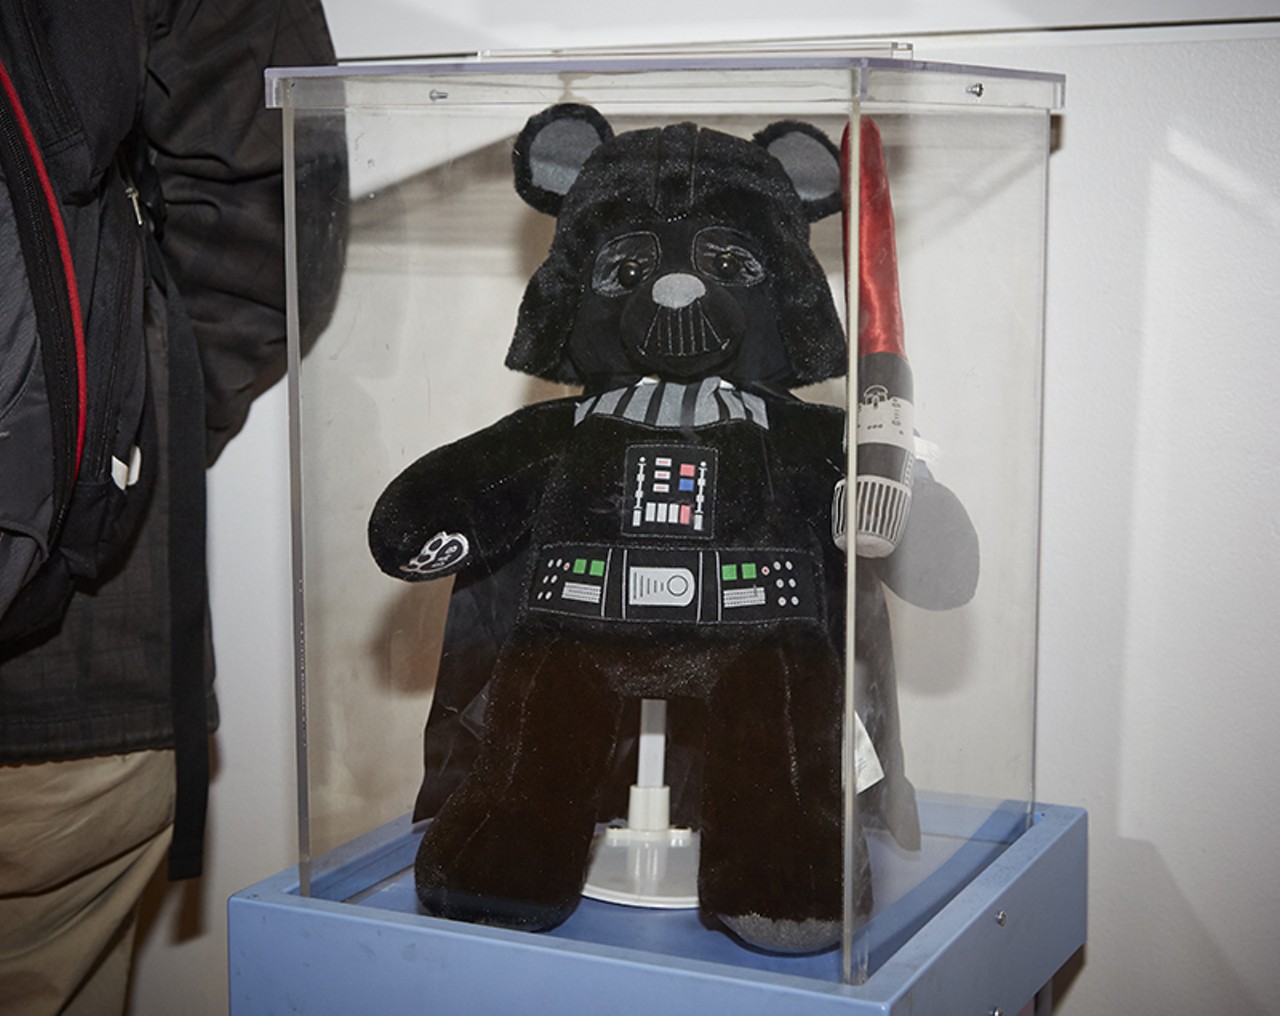 Builld-a-Bear 's Darth Vader.  So cute and cuddly?